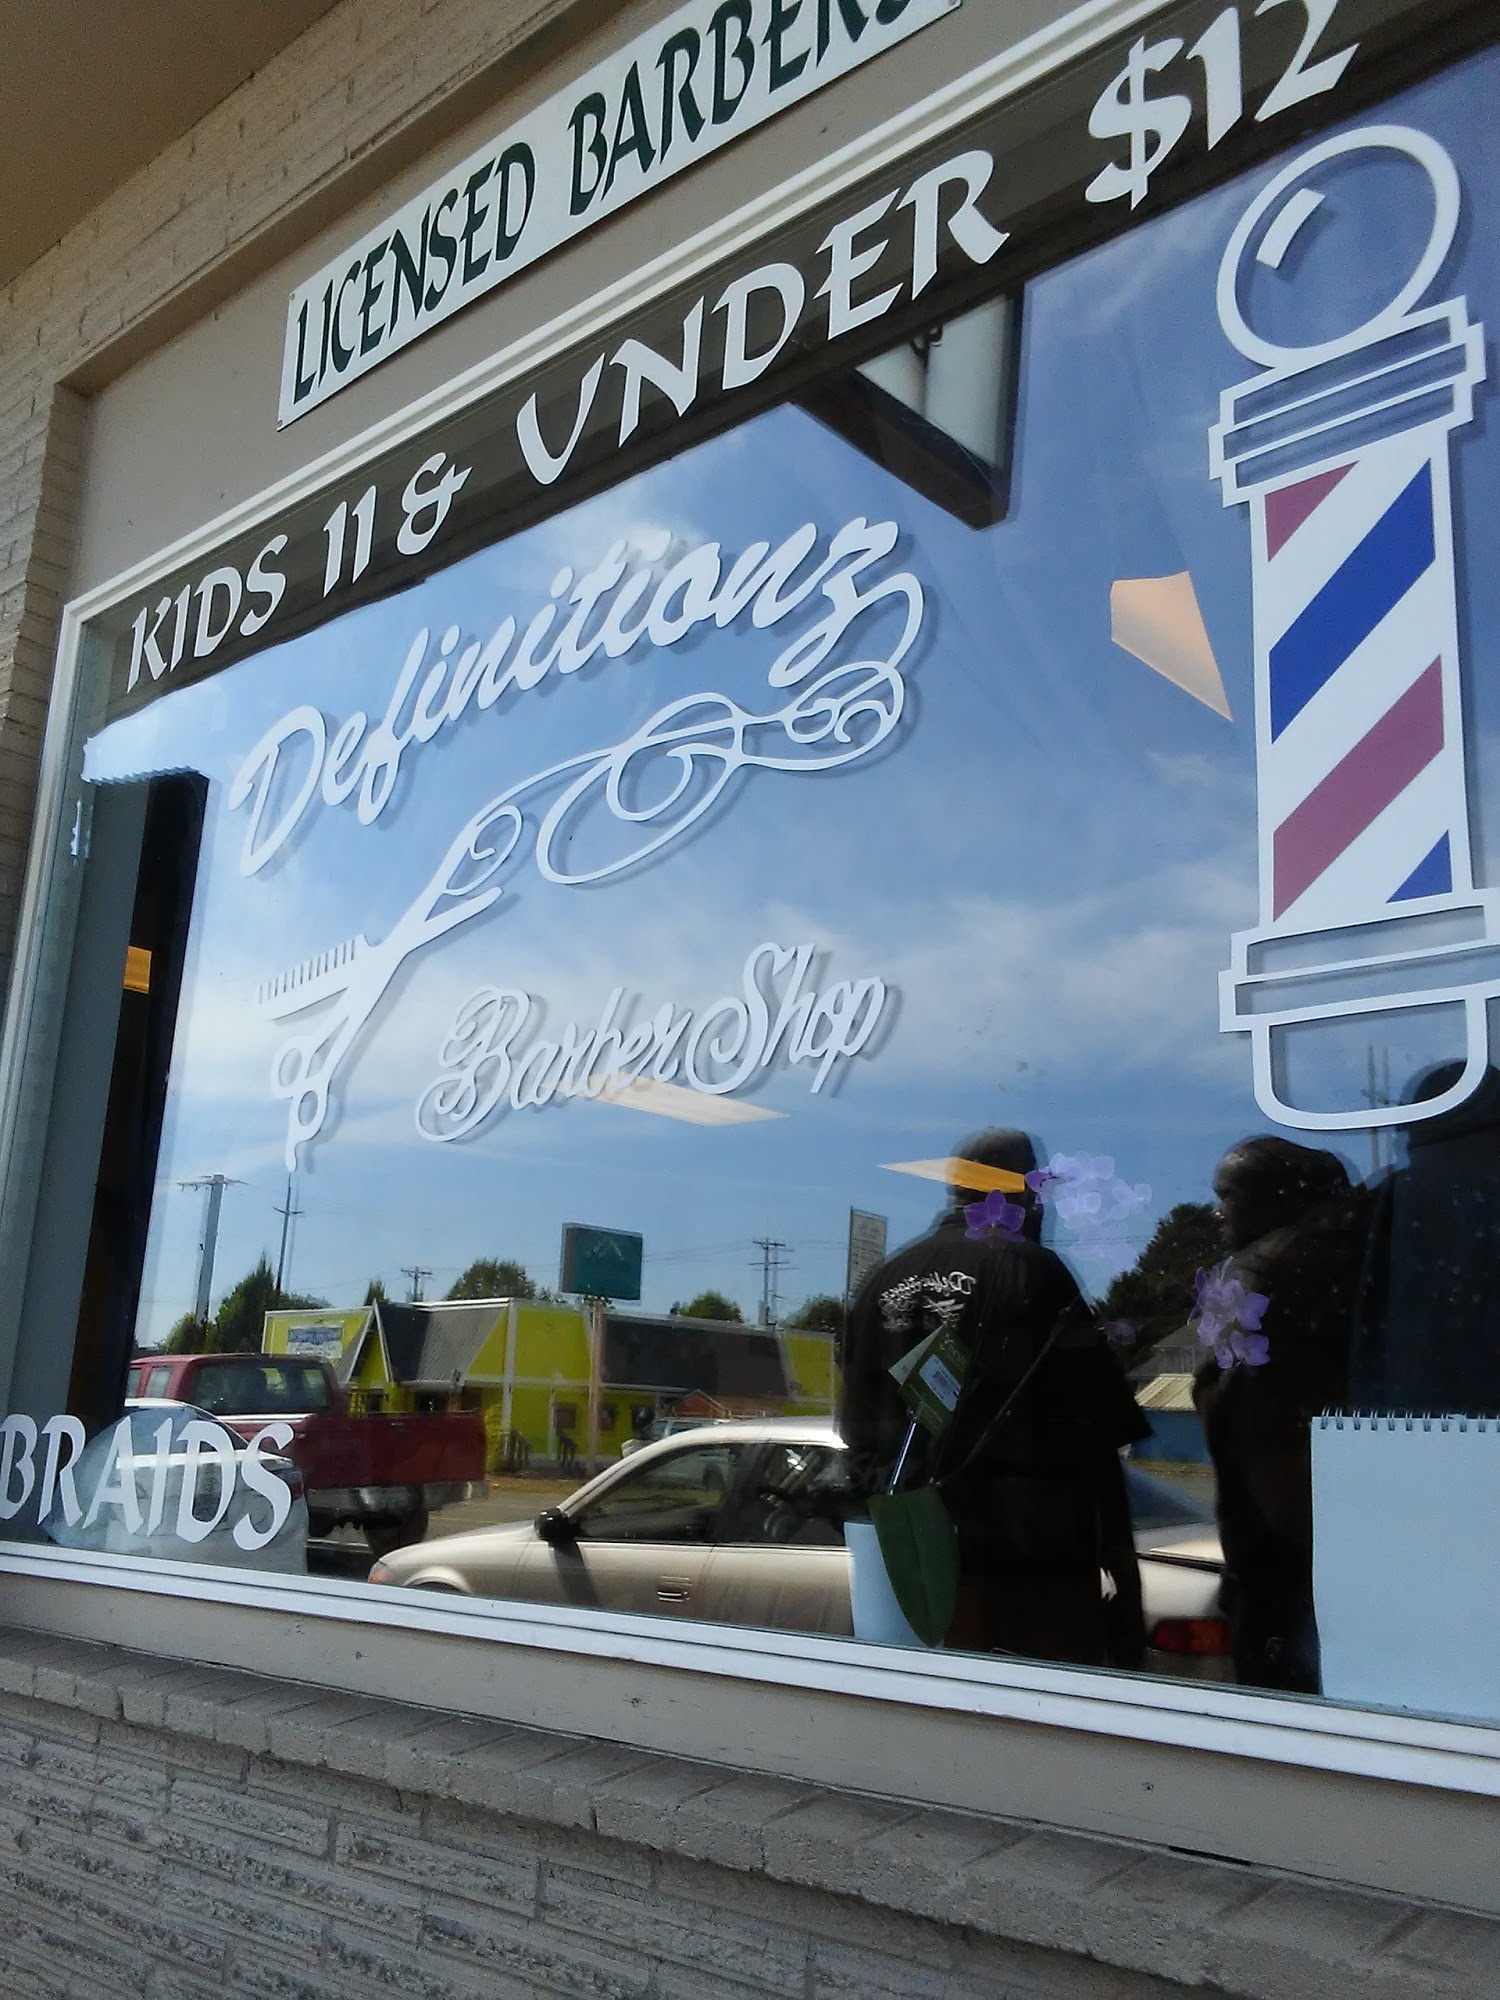 Definitionz Barber Shop